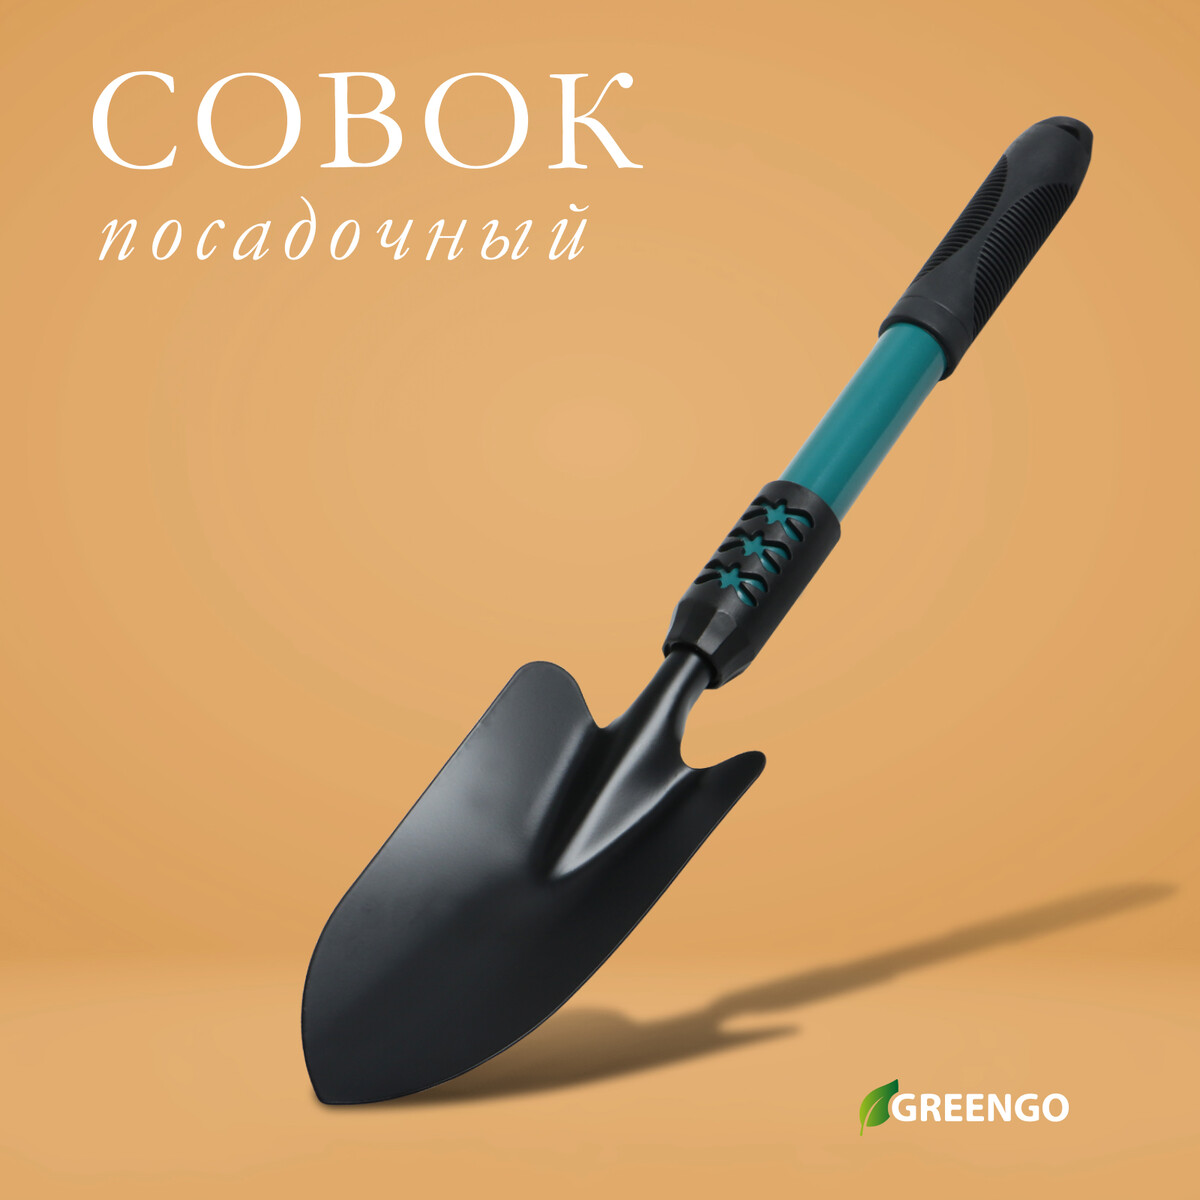 Совок посадочный greengo, длина 45 см, ширина 8,5 см, металлическая рукоять с резиновой ручкой вилка посадочная длина 20 см металлическая ручка